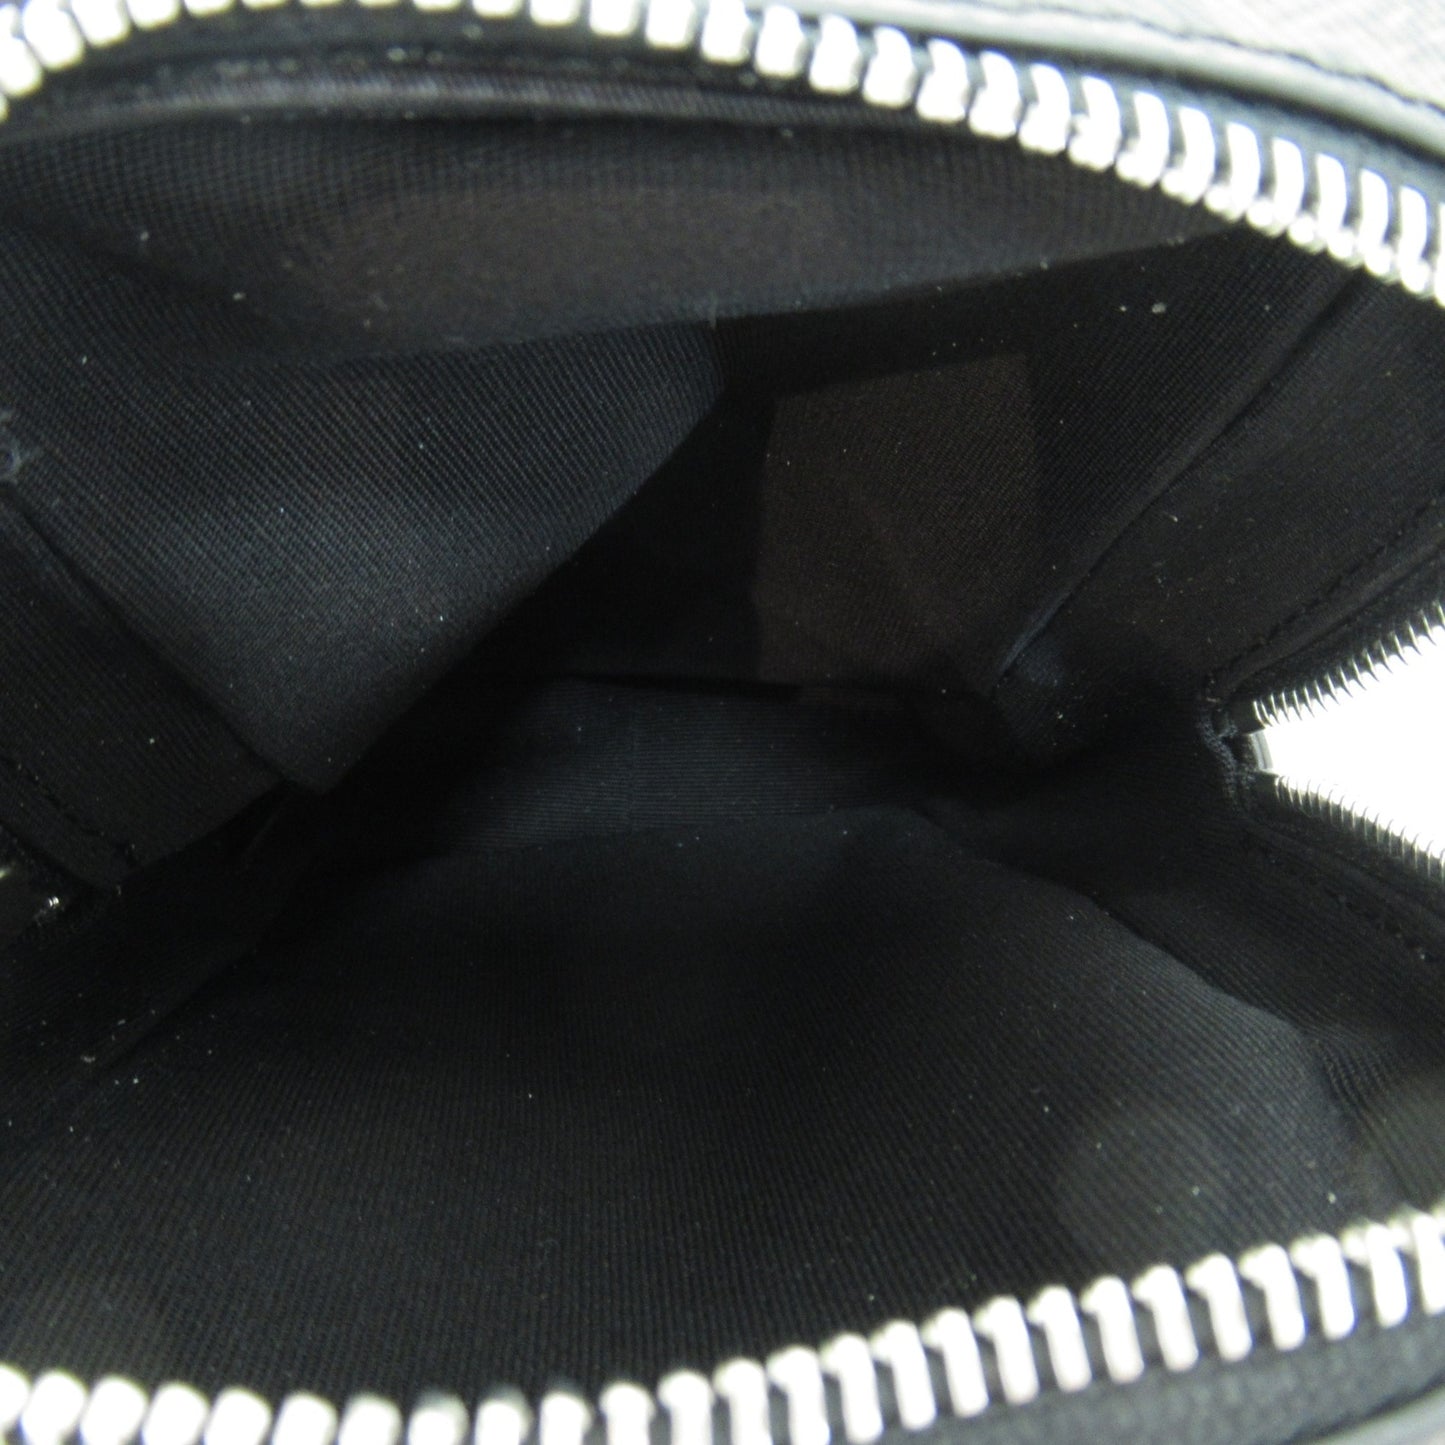 Celine Unisex Canvas Shoulder Bag with Timeless Appeal in Black